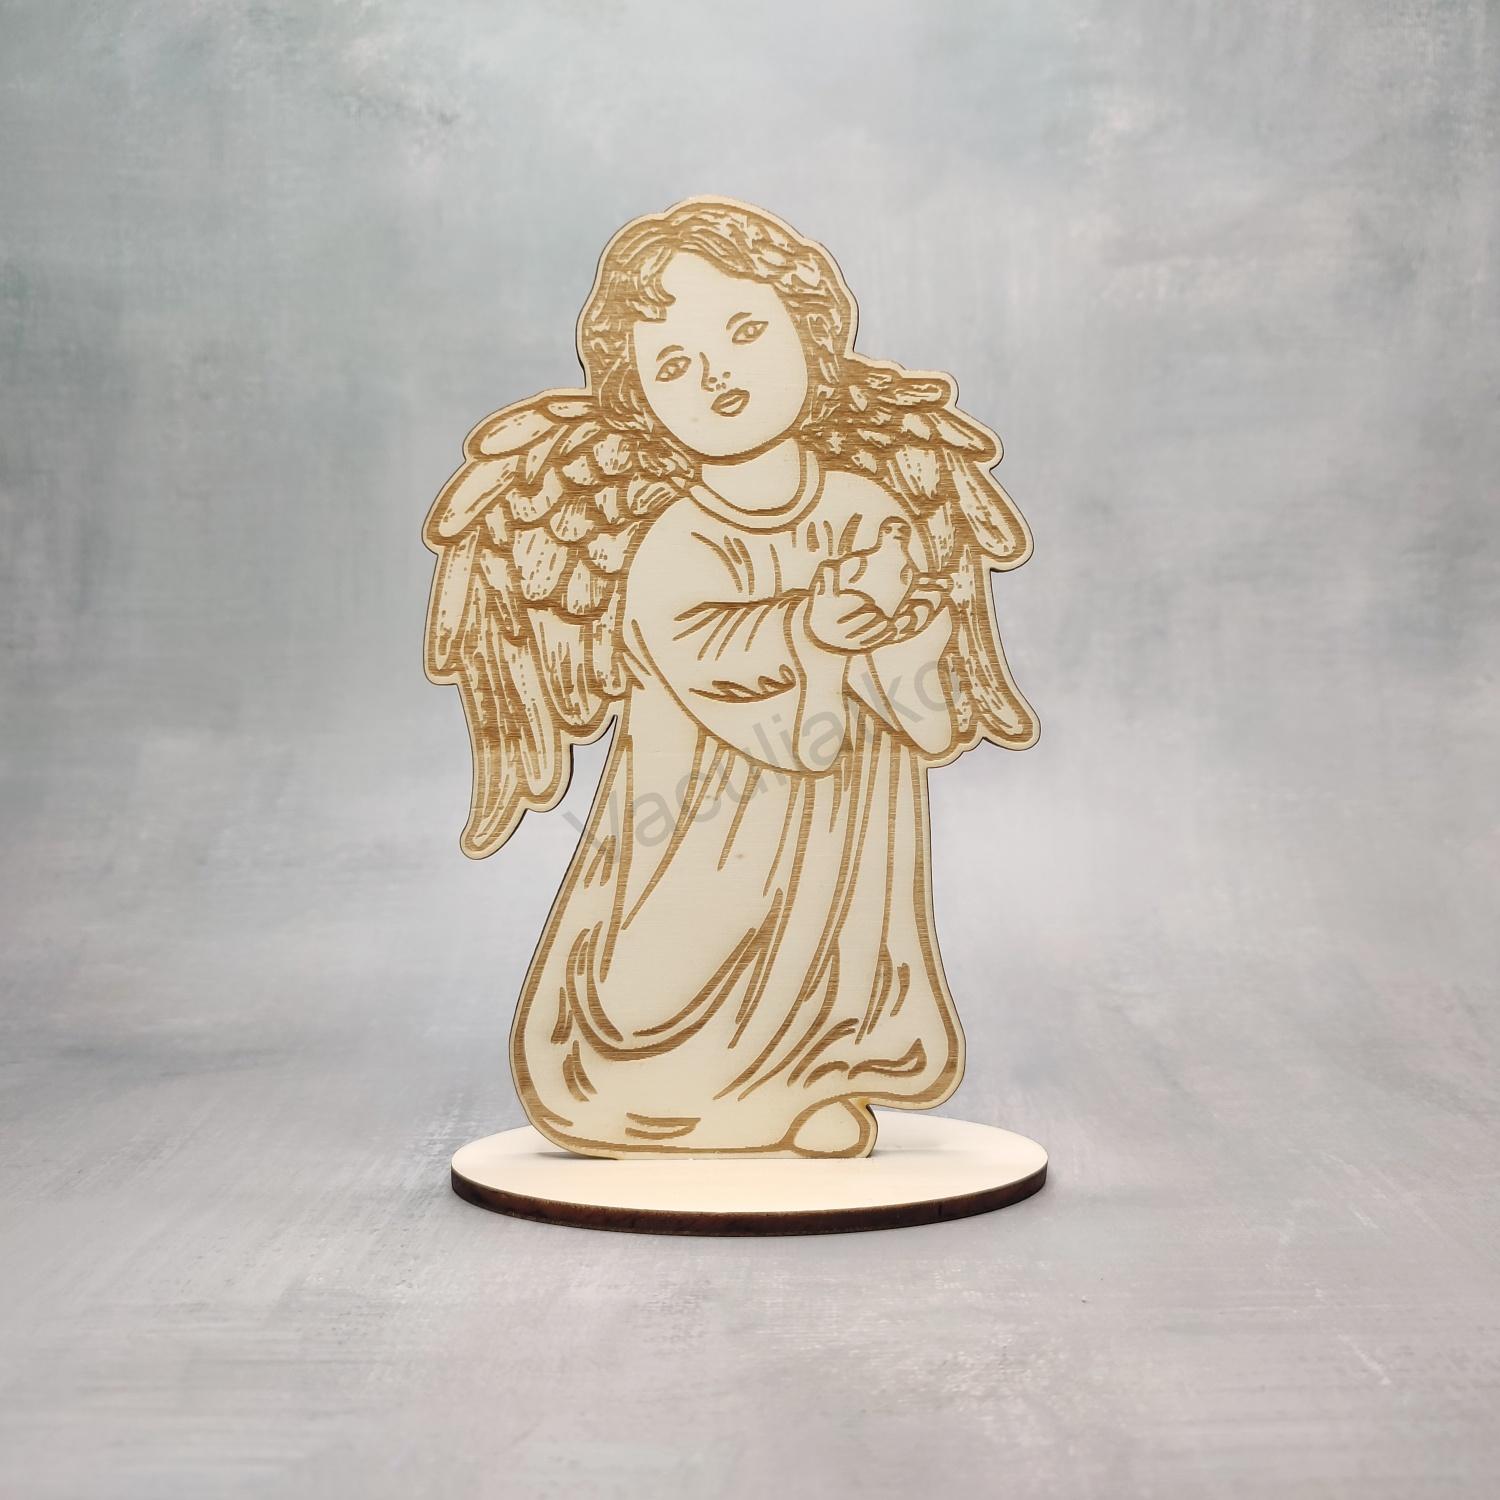 Drevená dekorácia - anjel 9,5x15cm (grav.)